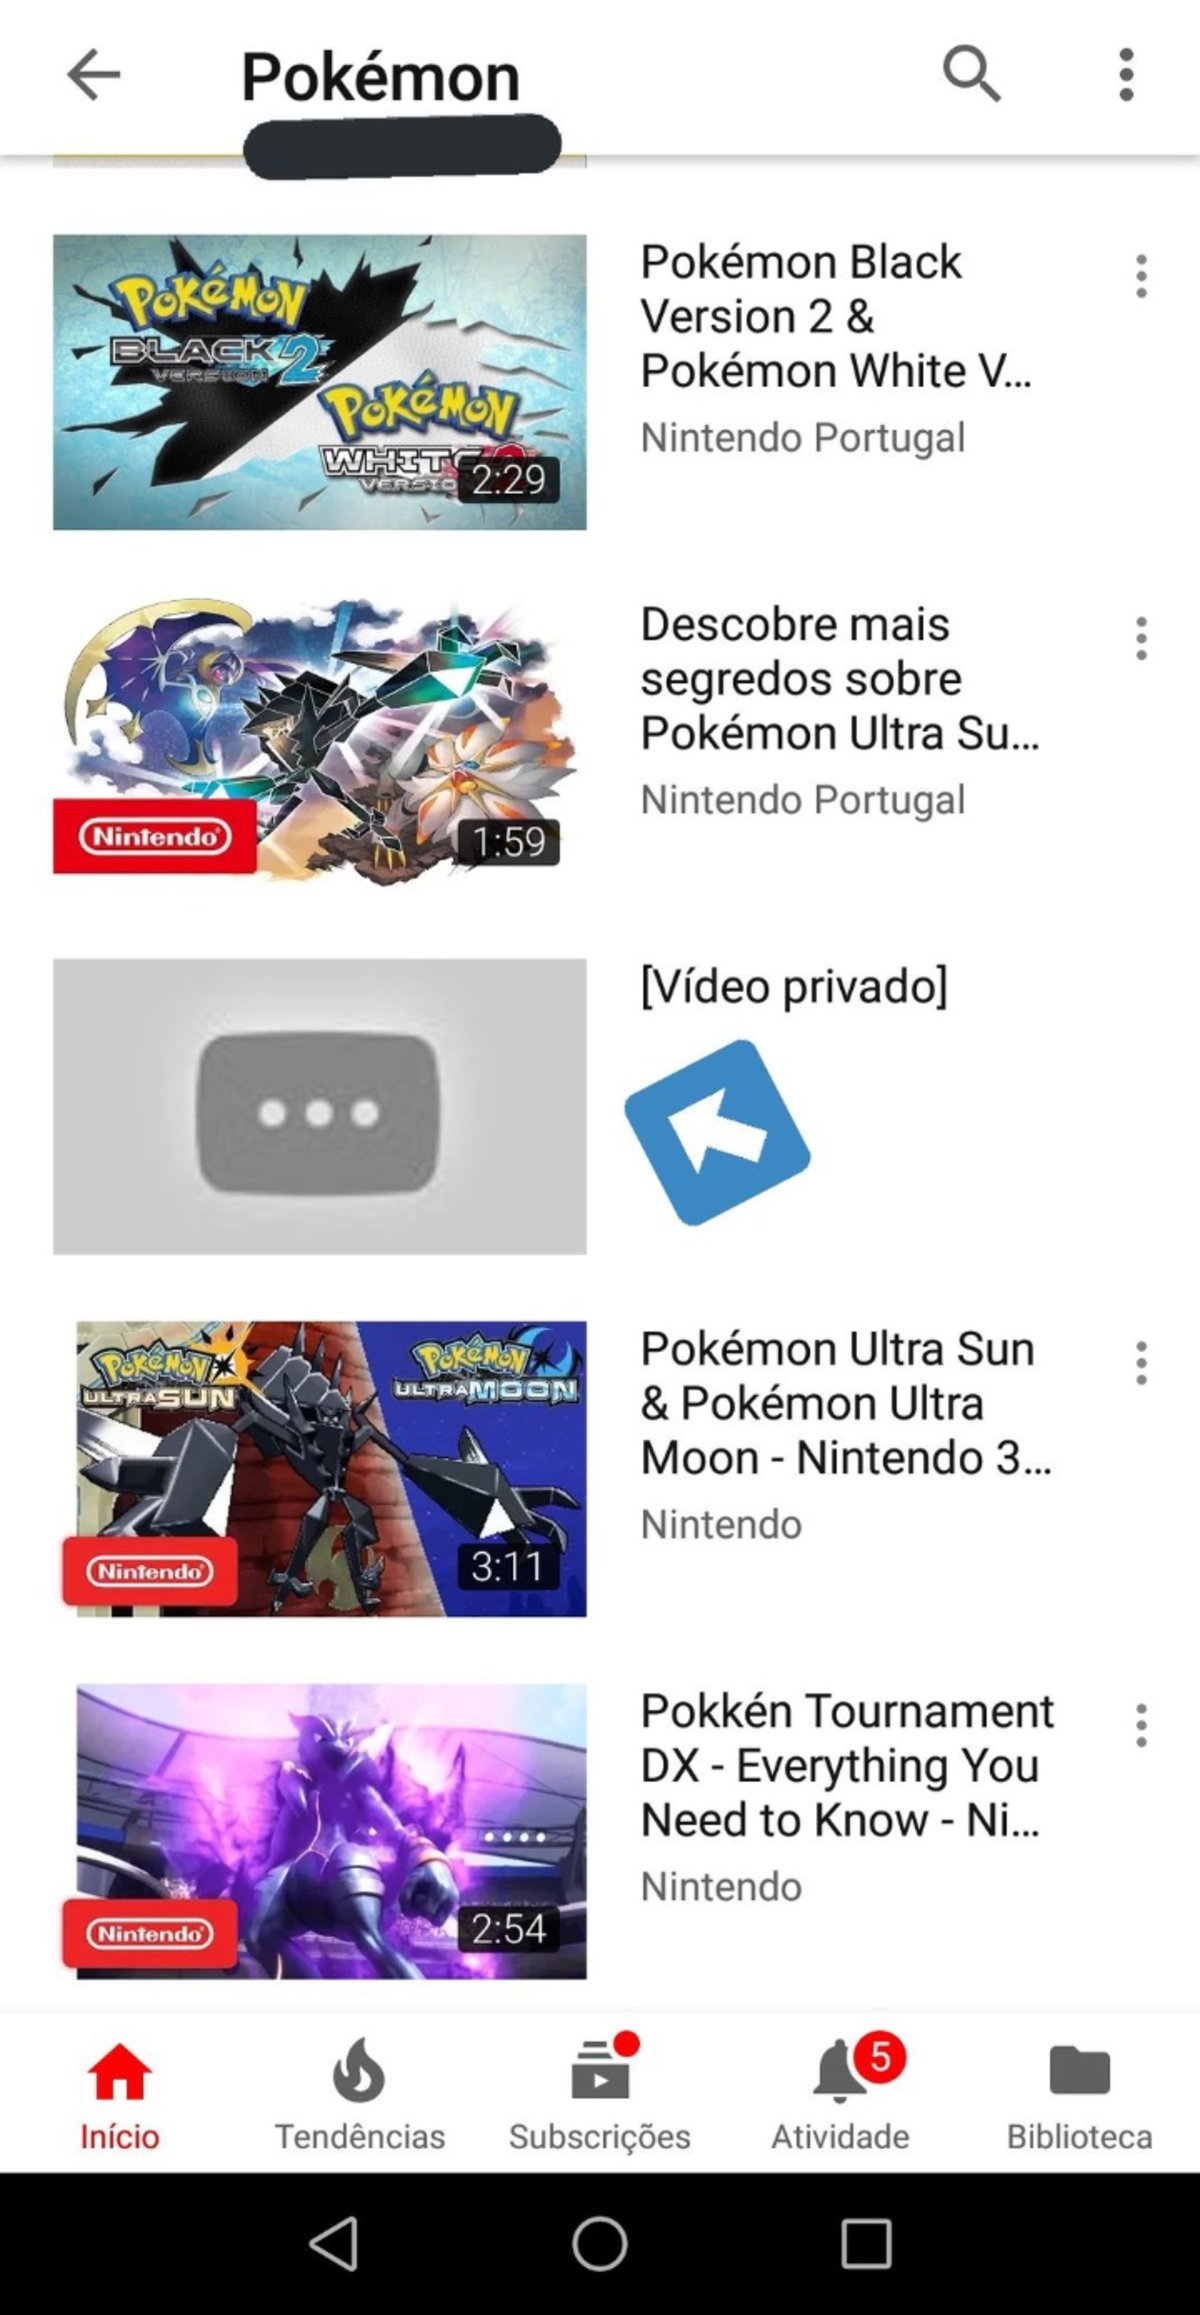 Desmintiendo rumores: los nuevos vídeos privados de Pokémon en YouTube no son de la Switch